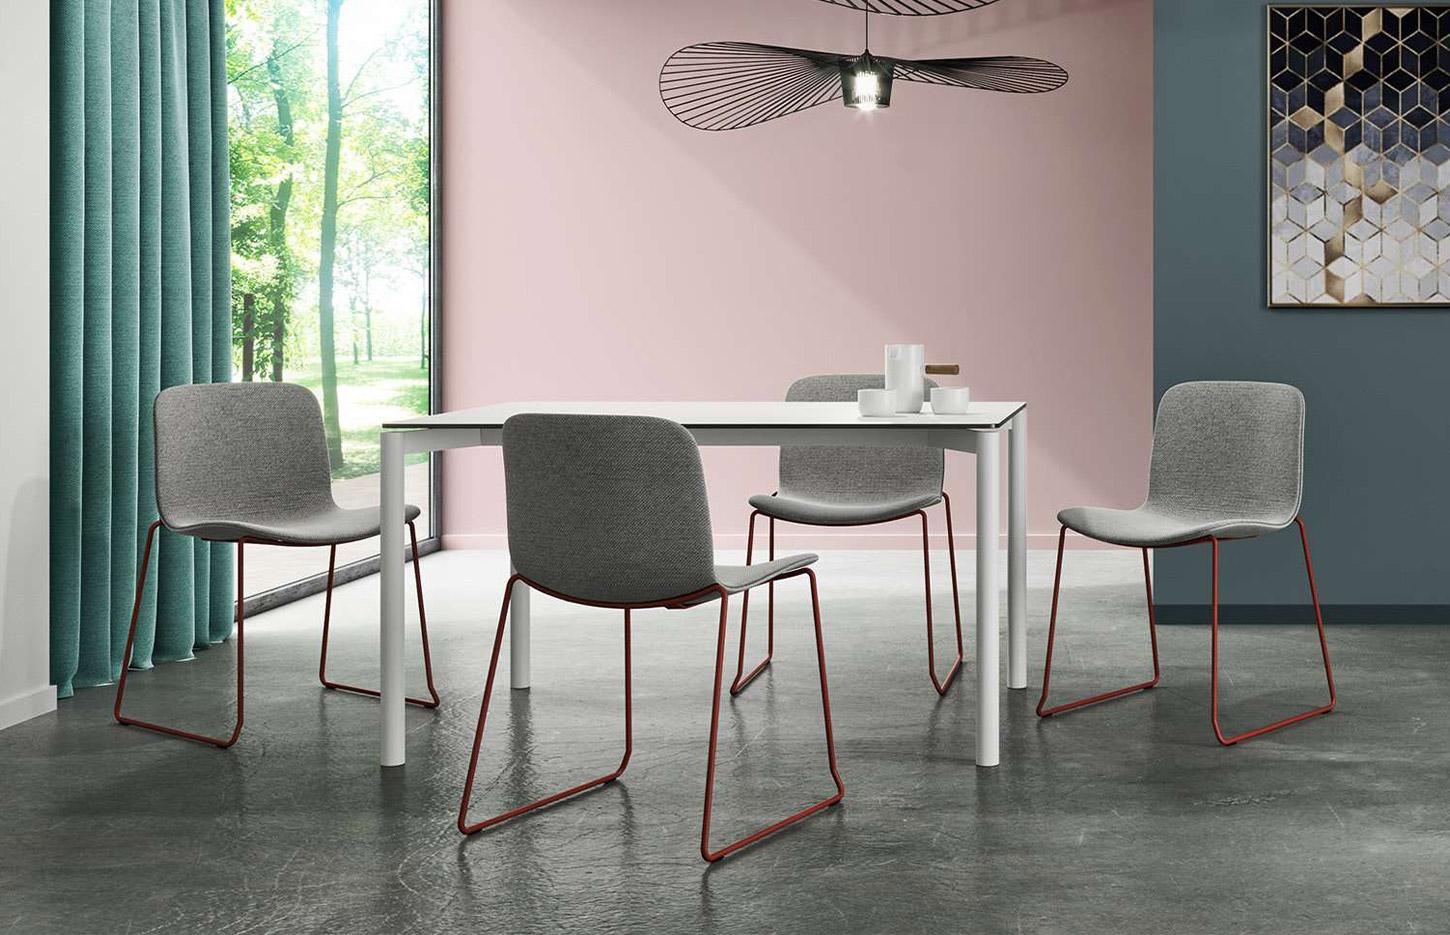 Chaise de collectivité coque polypro ou tapissée, chaise ou tabouret, gamme Yengo - France Bureau